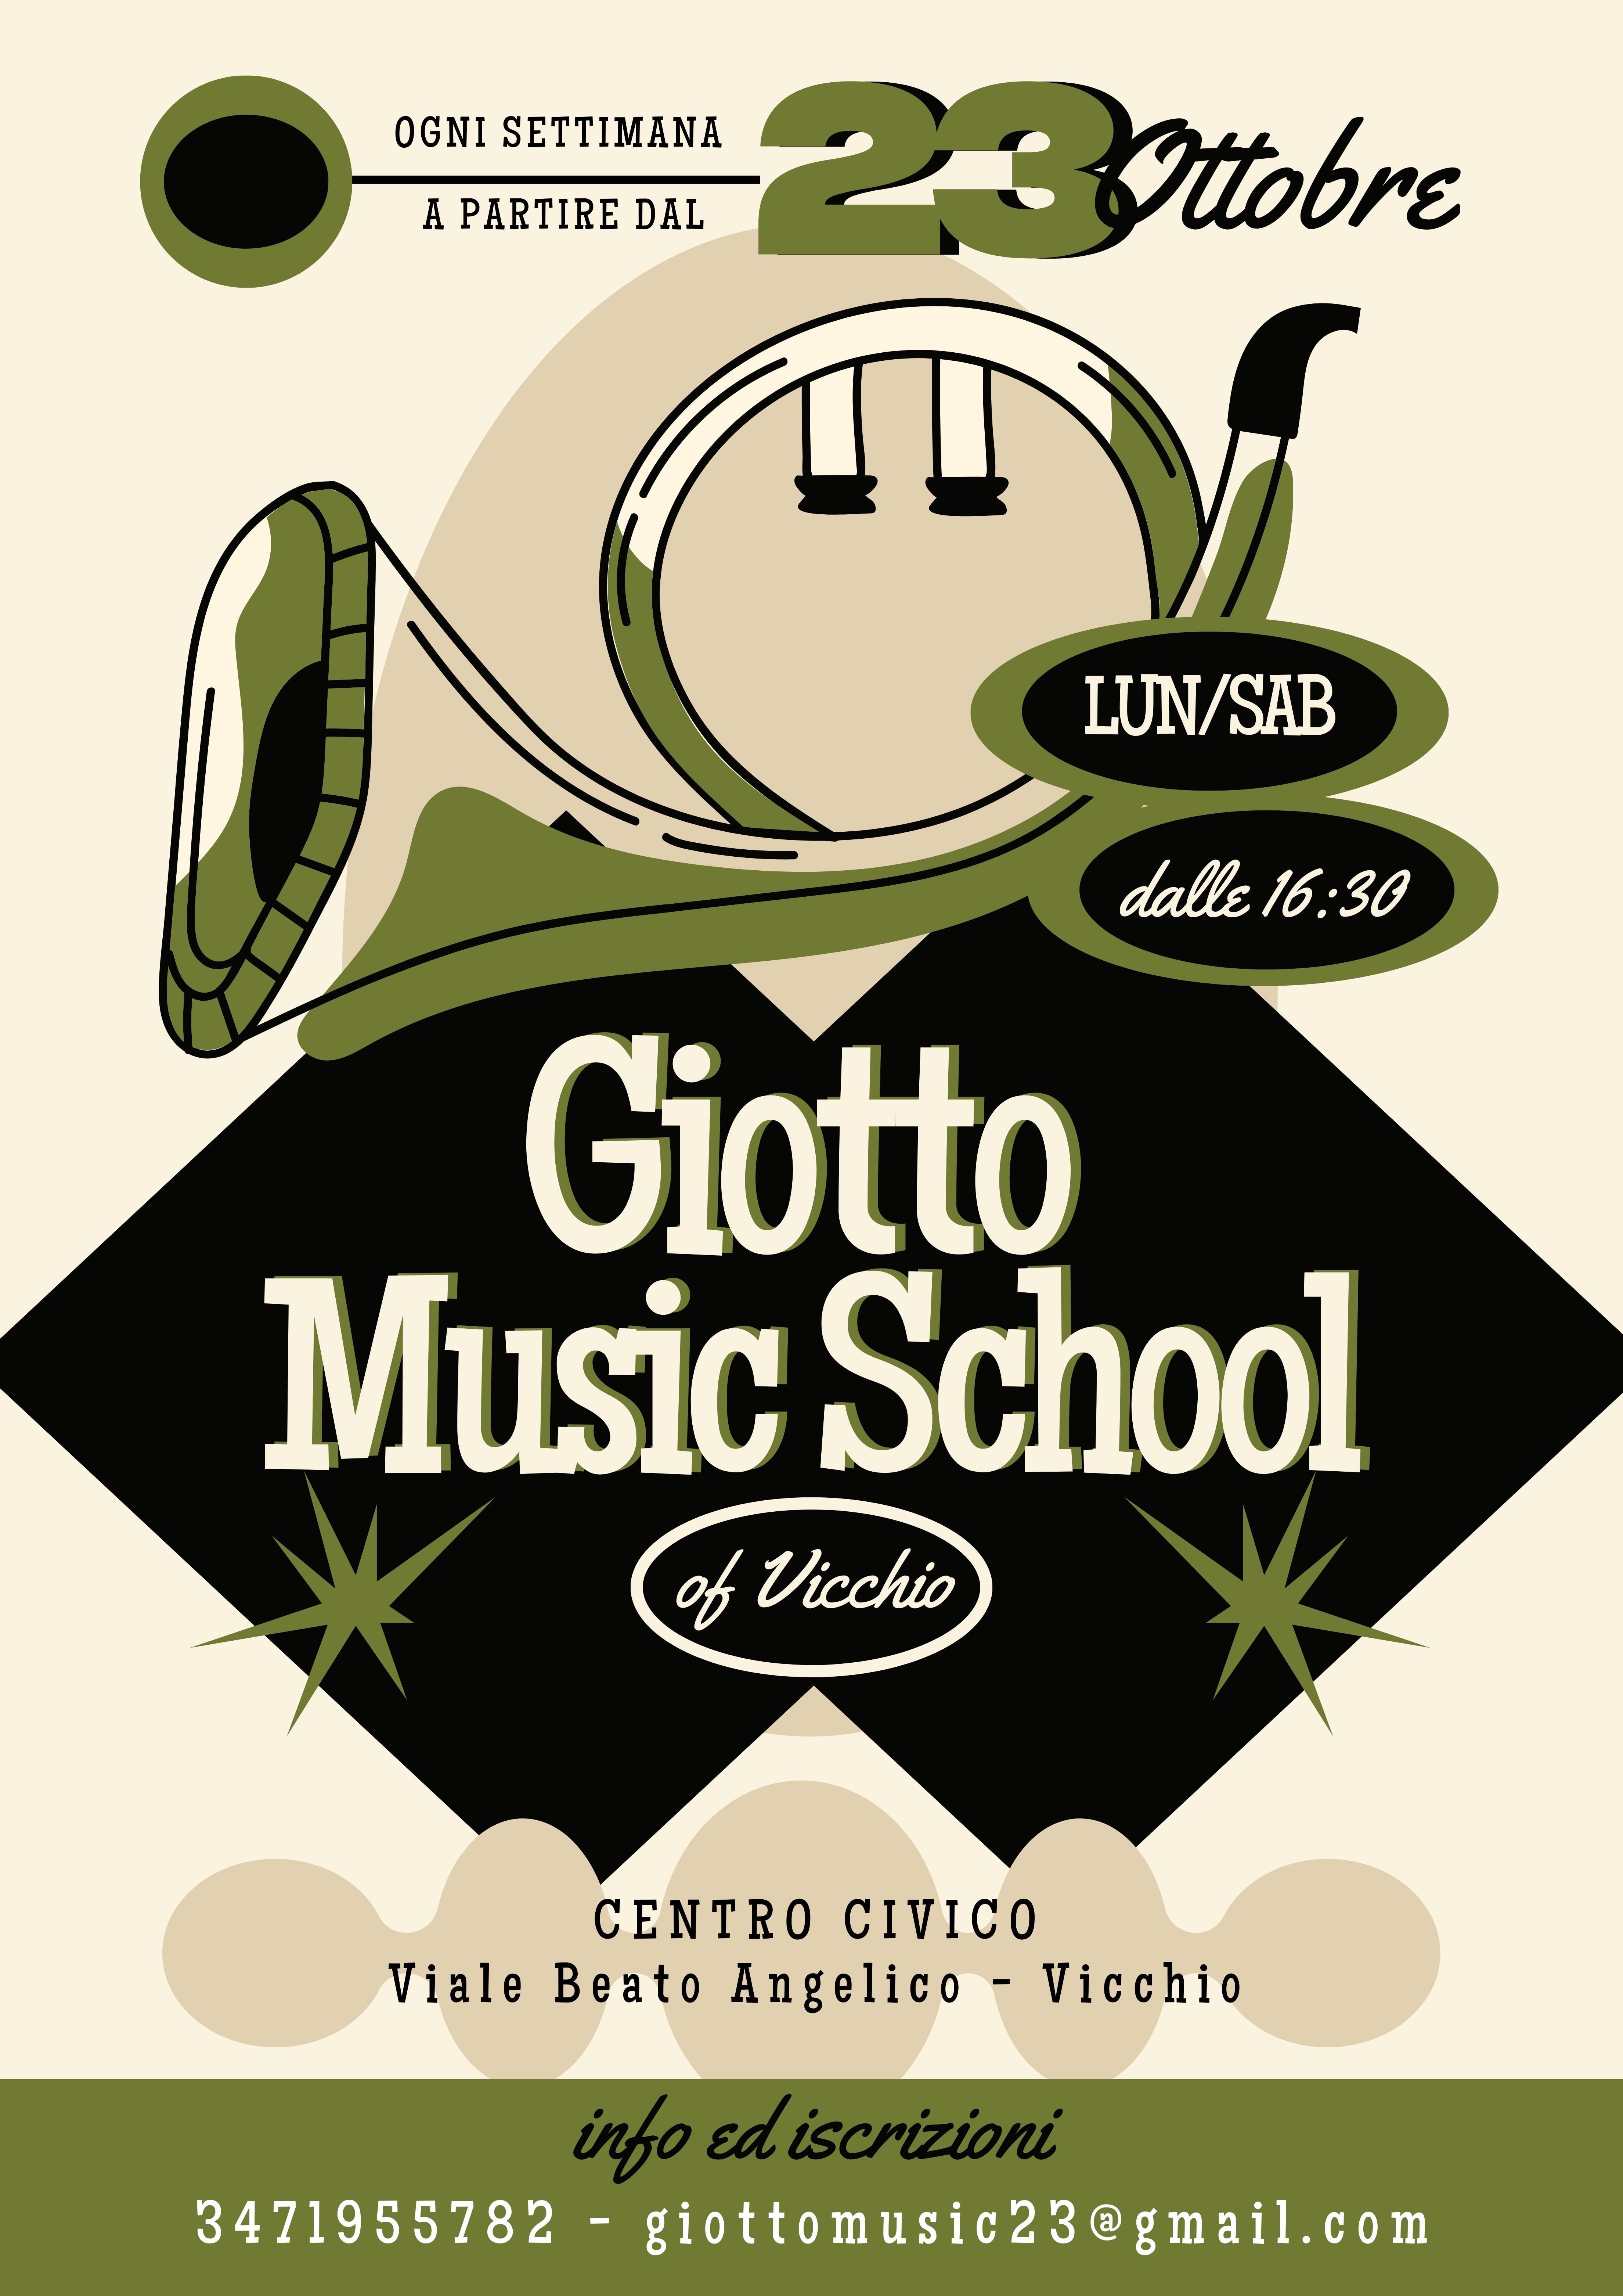 Giotto Music School